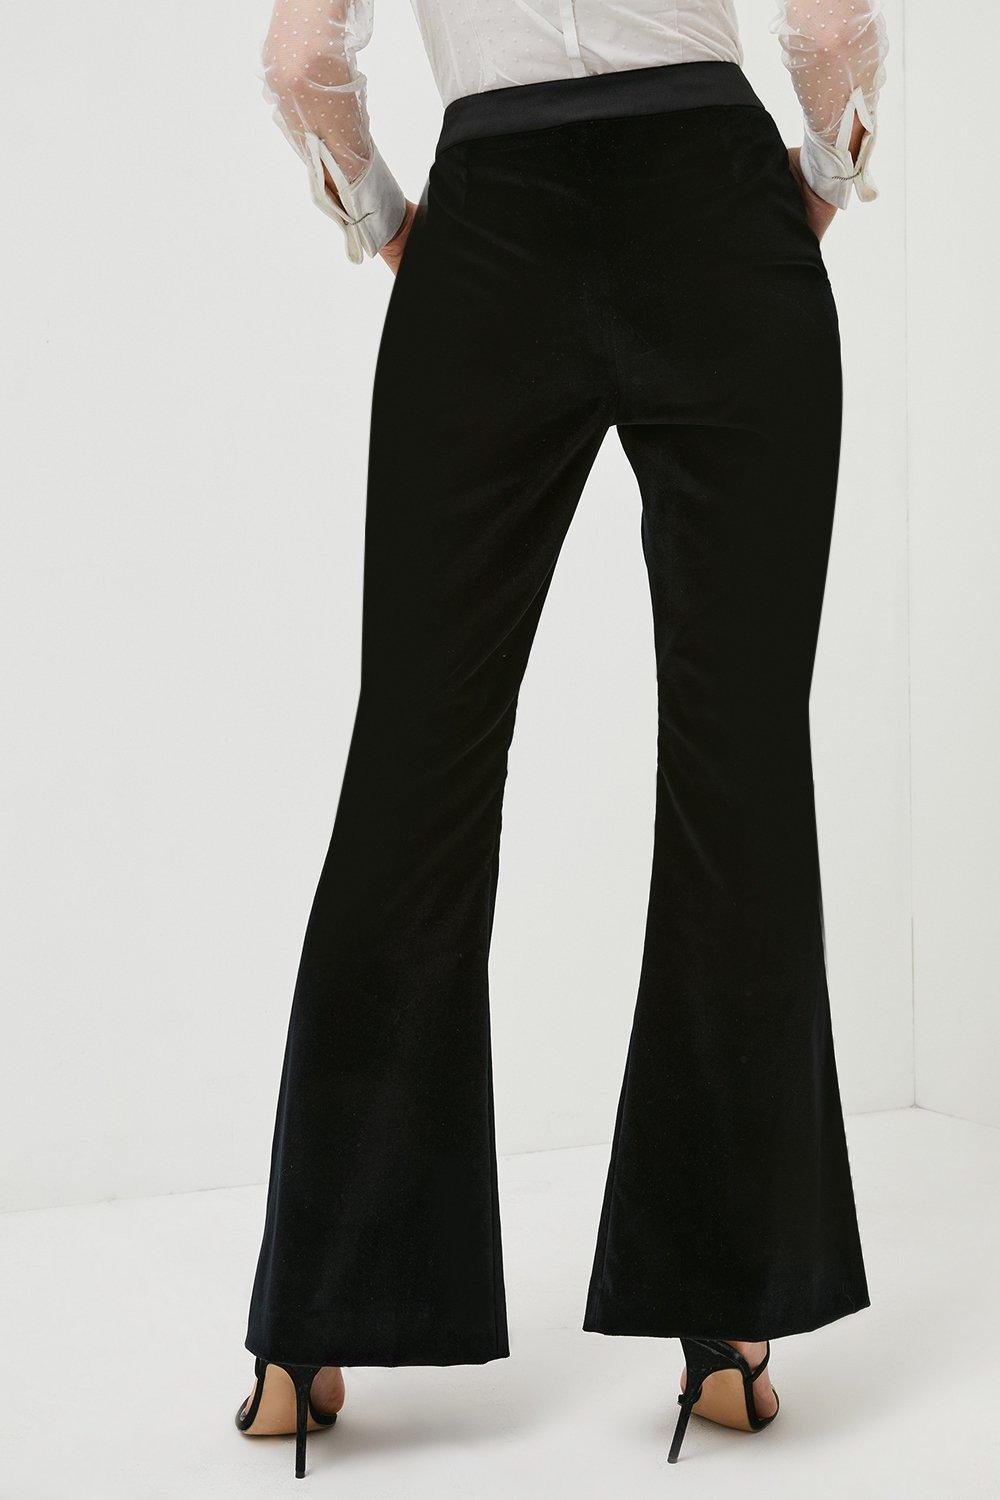 ETRO flared velvet trousers - Black